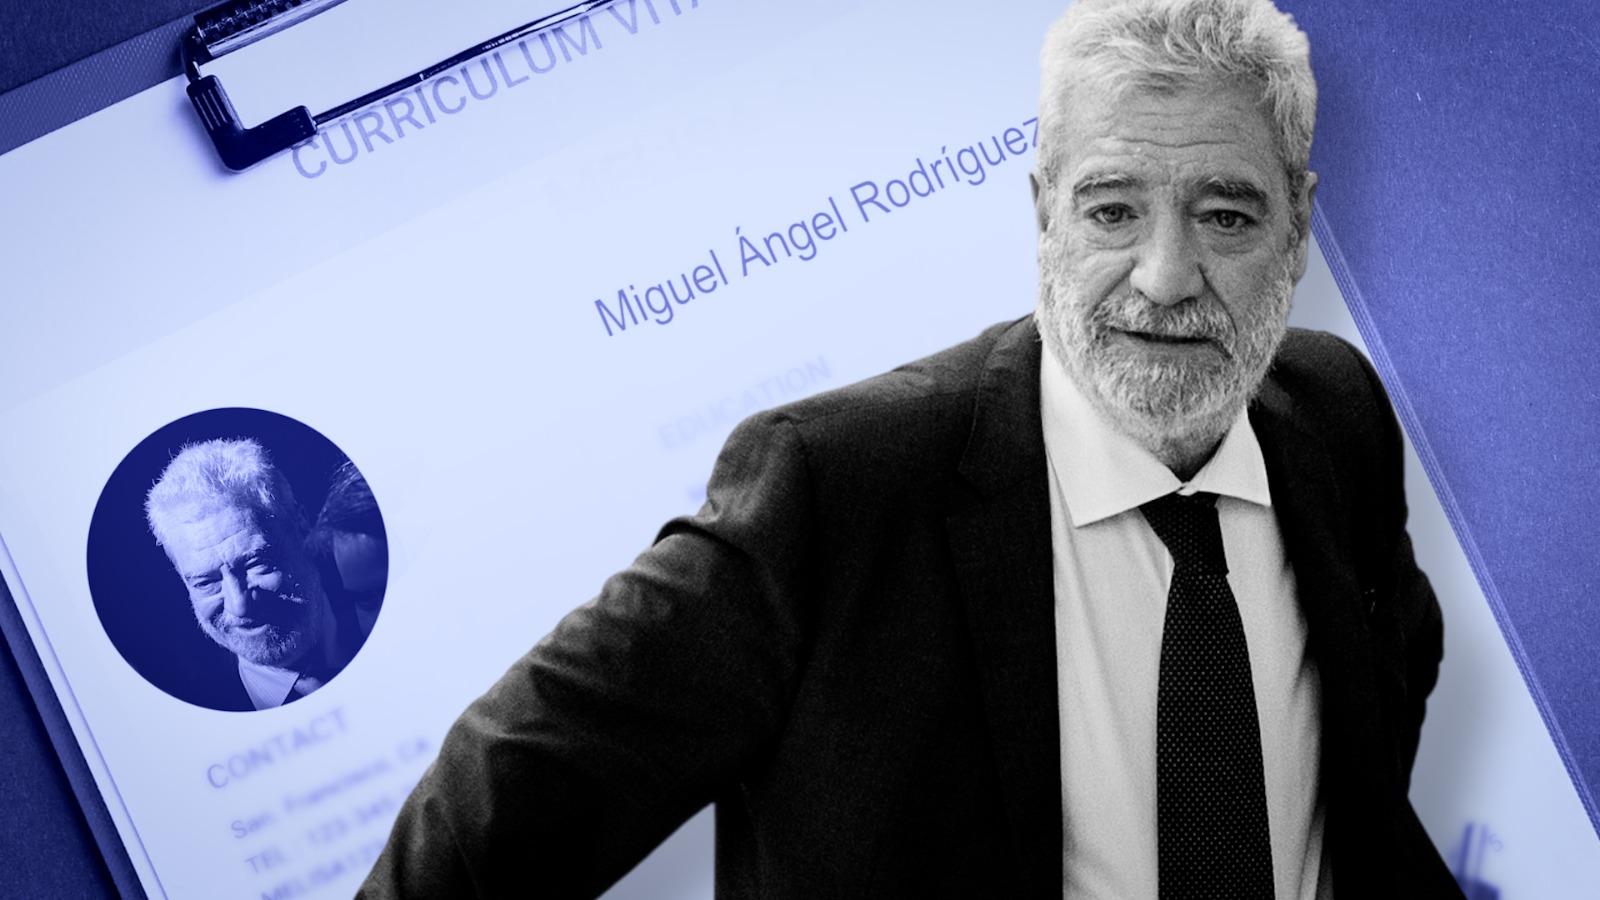 La biografía no oficial de Miguel Ángel Rodríguez